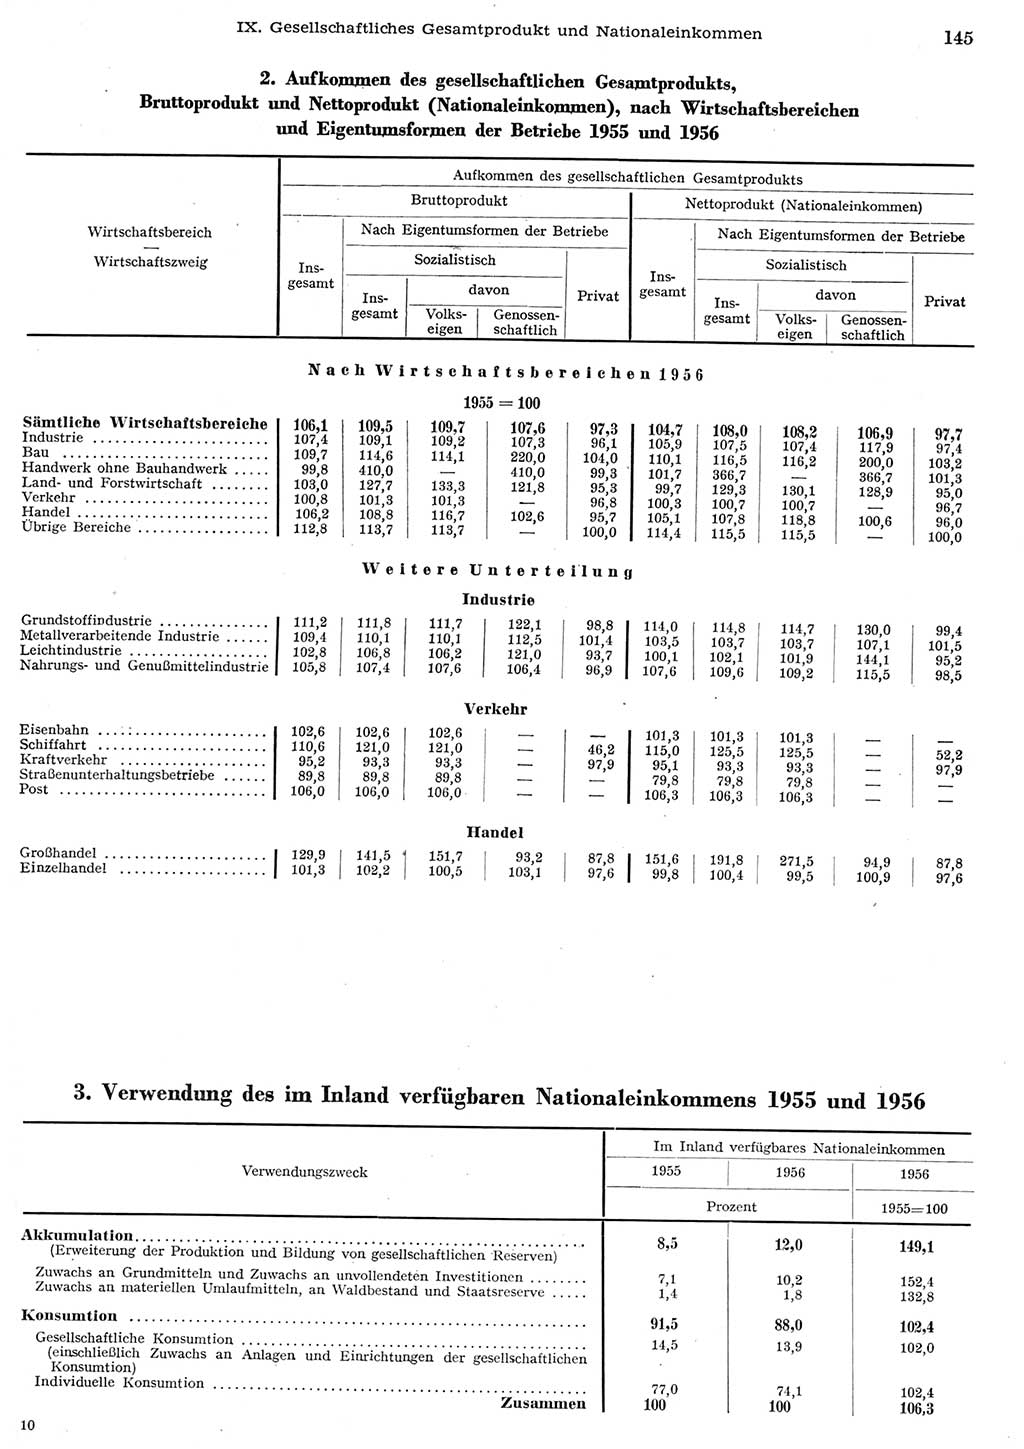 Statistisches Jahrbuch der Deutschen Demokratischen Republik (DDR) 1956, Seite 145 (Stat. Jb. DDR 1956, S. 145)